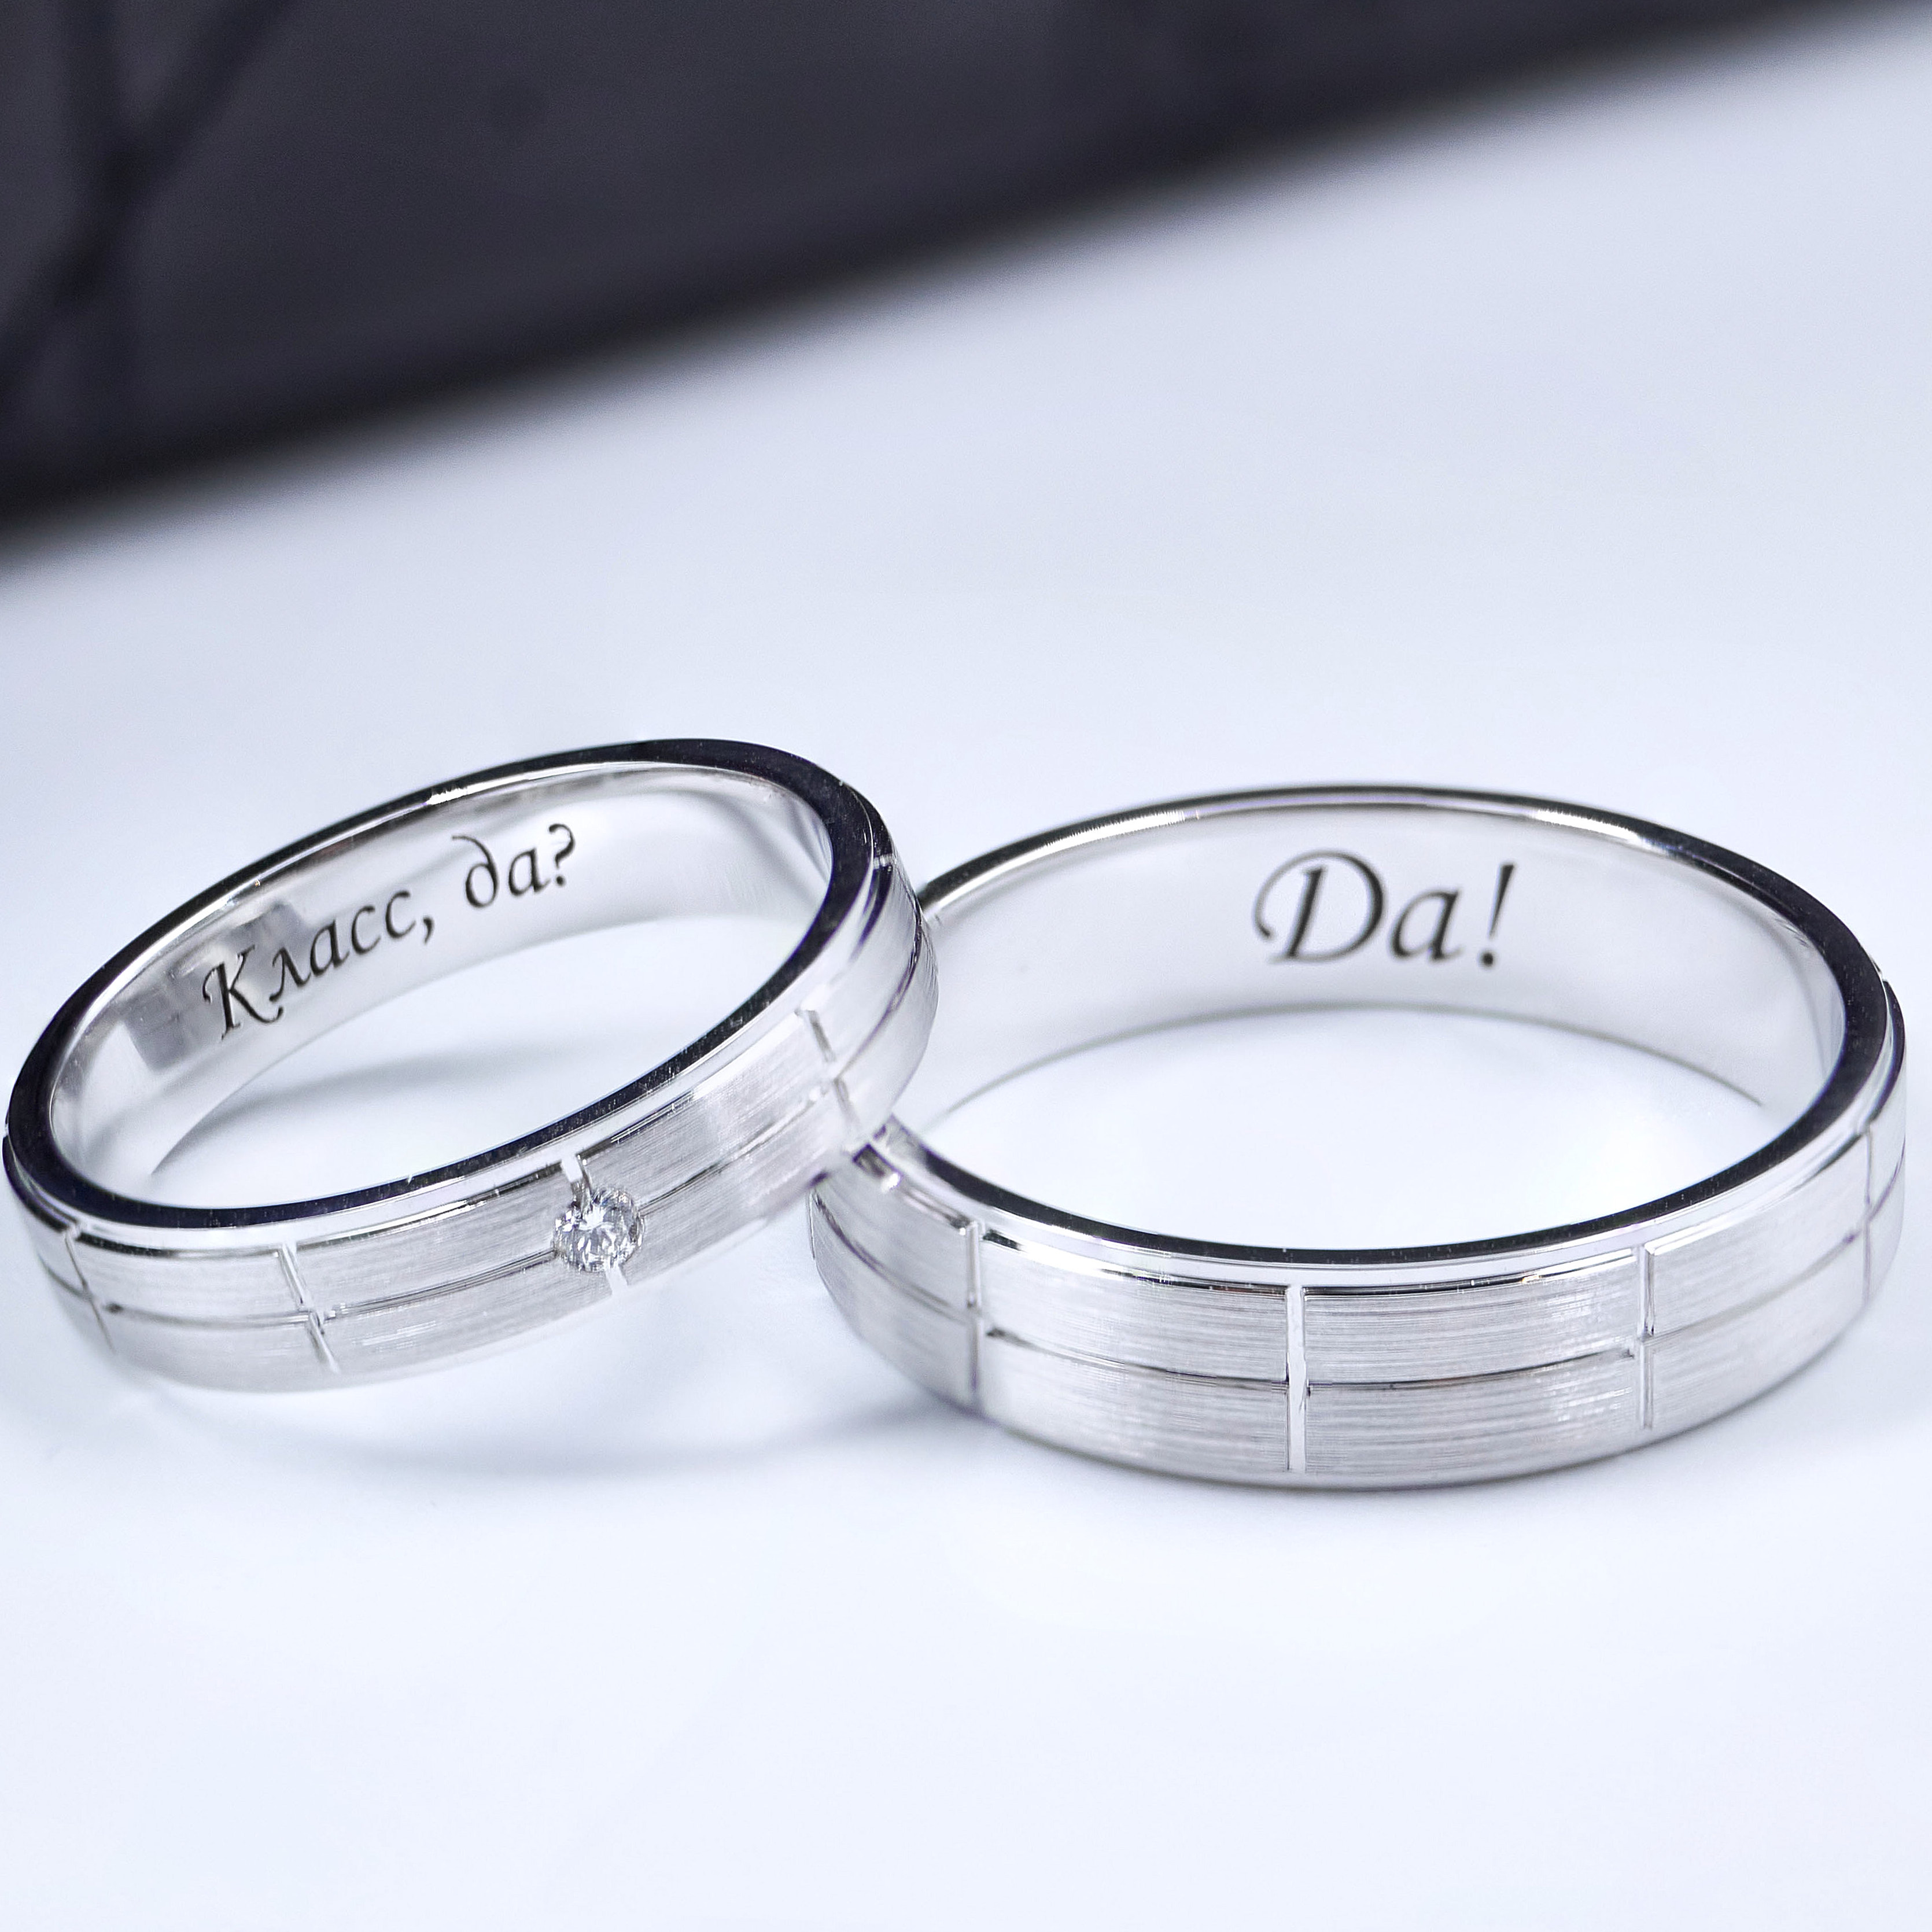 Обручальные кольца из платины Е-501-Pl купить по цене 99009 руб. в Москве